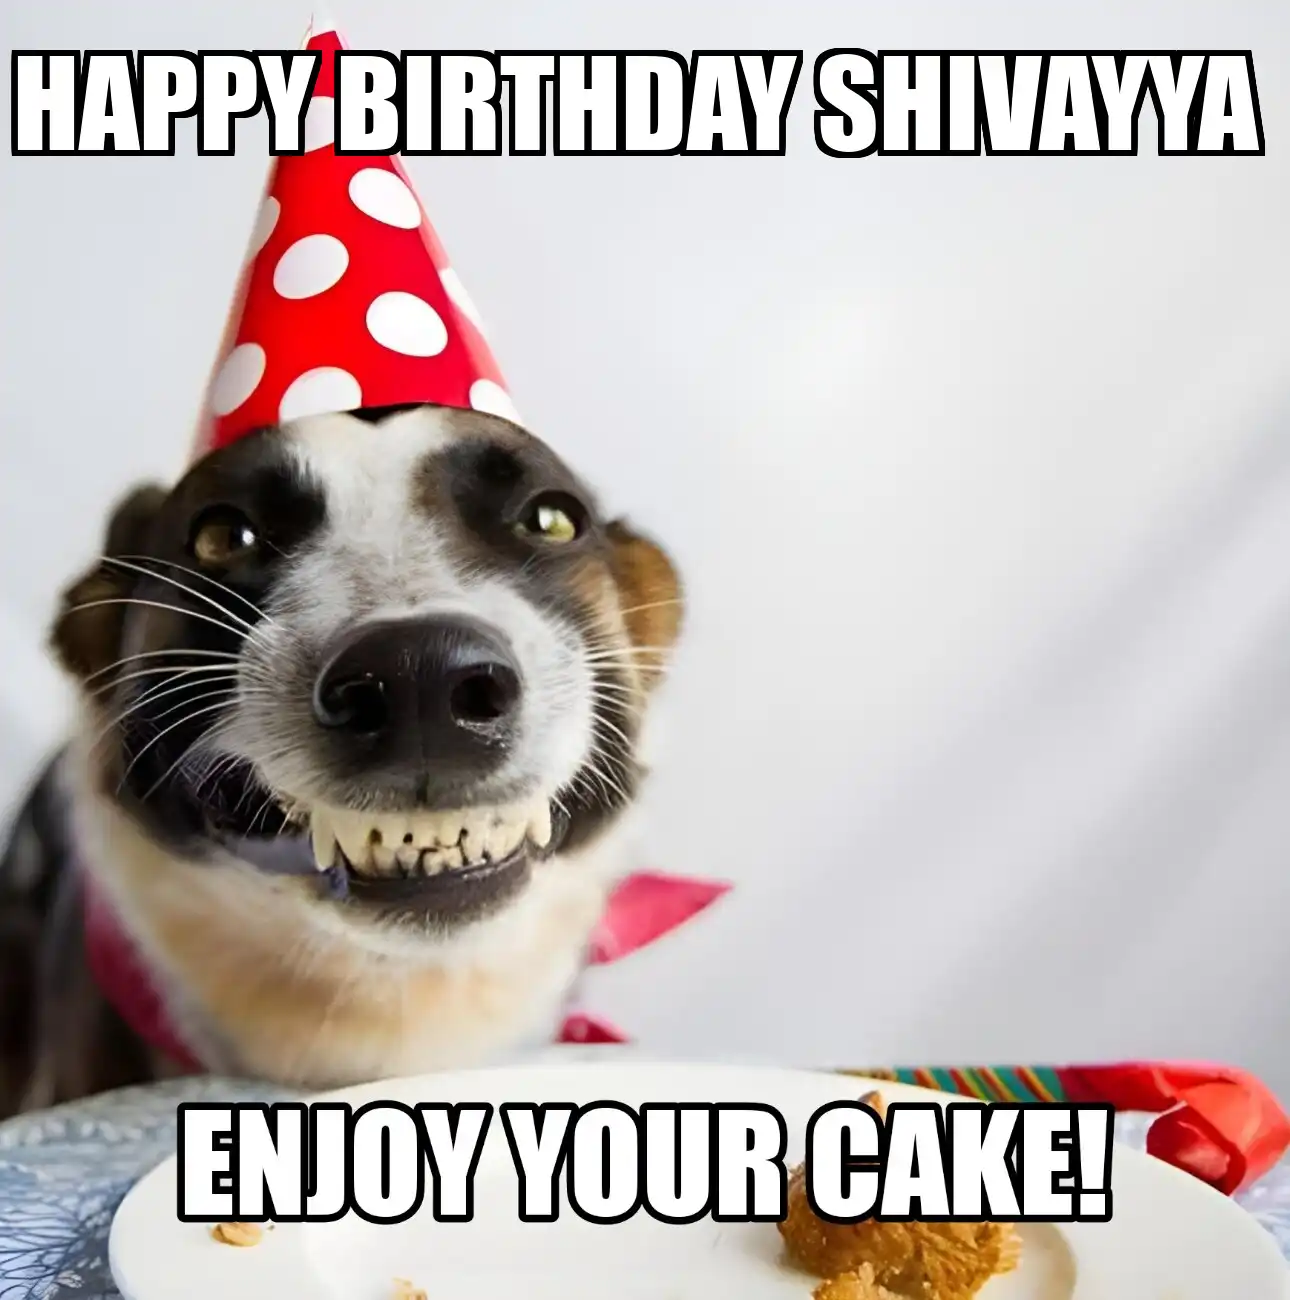 Happy Birthday Shivayya Enjoy Your Cake Dog Meme